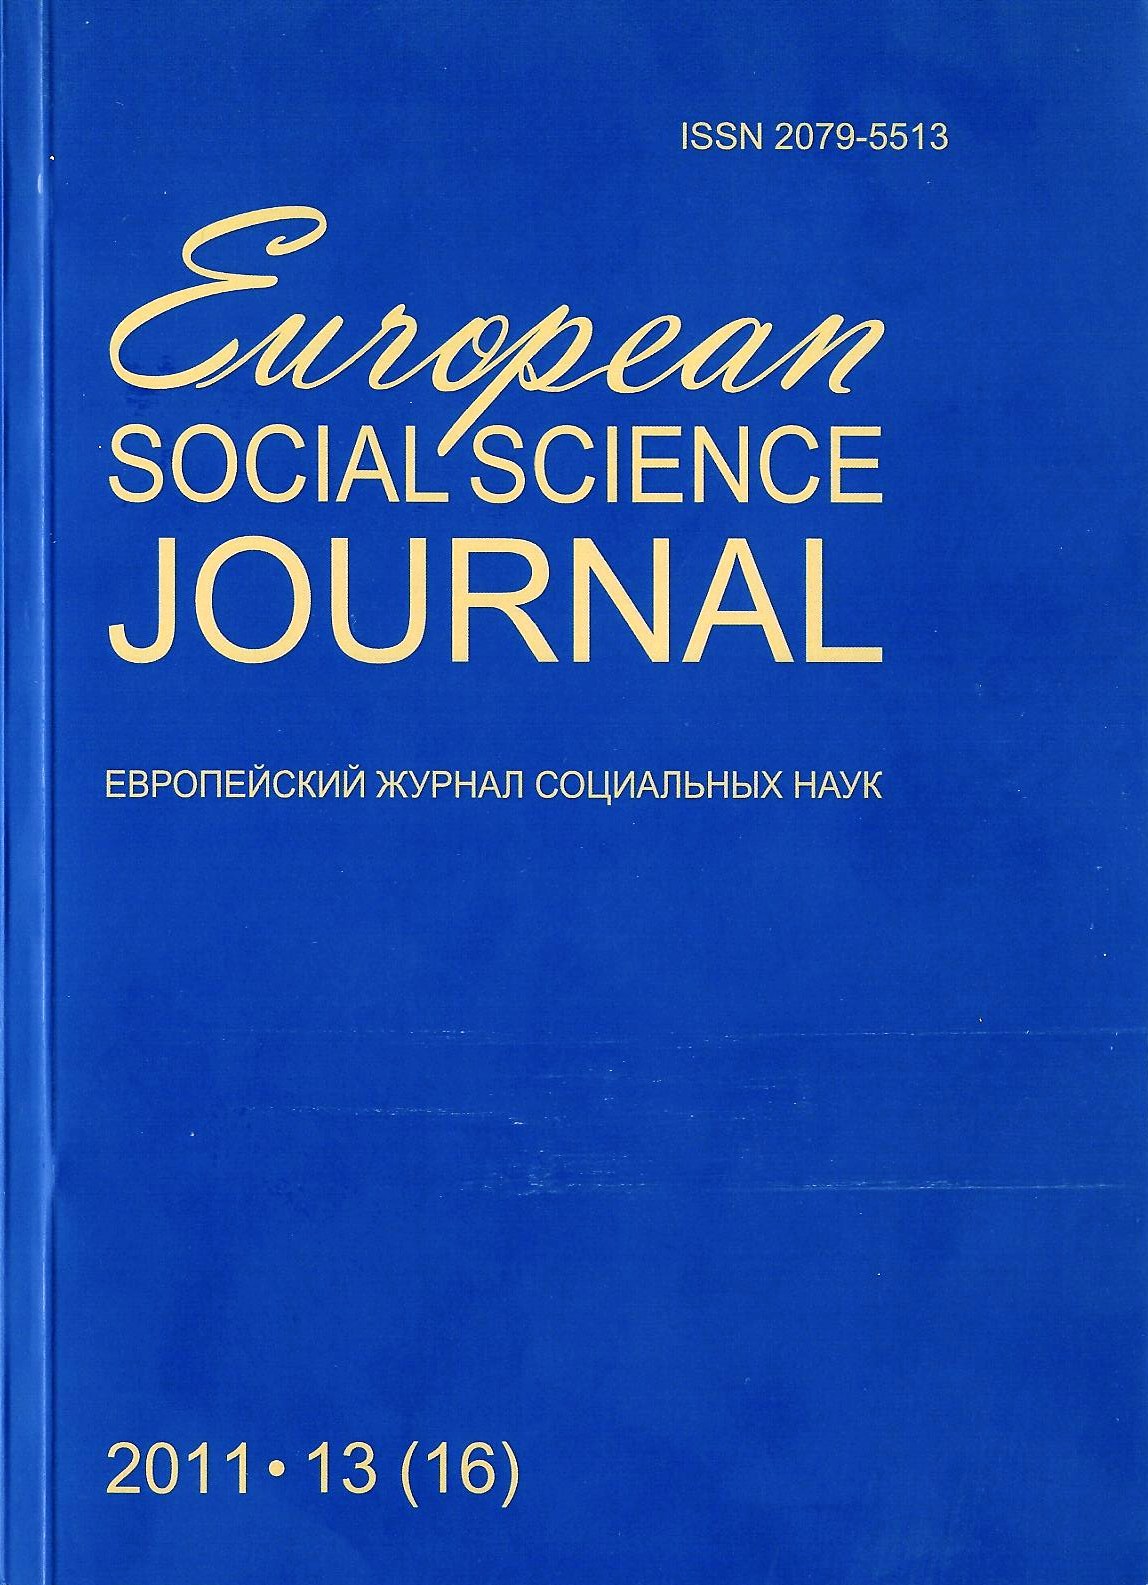 Статья в журнале "EUROPEAN SOCIAL SCIENCE JOURNAL = ЕВРОПЕЙСКИЙ ЖУРНАЛ СОЦИАЛЬНЫХ НАУК"